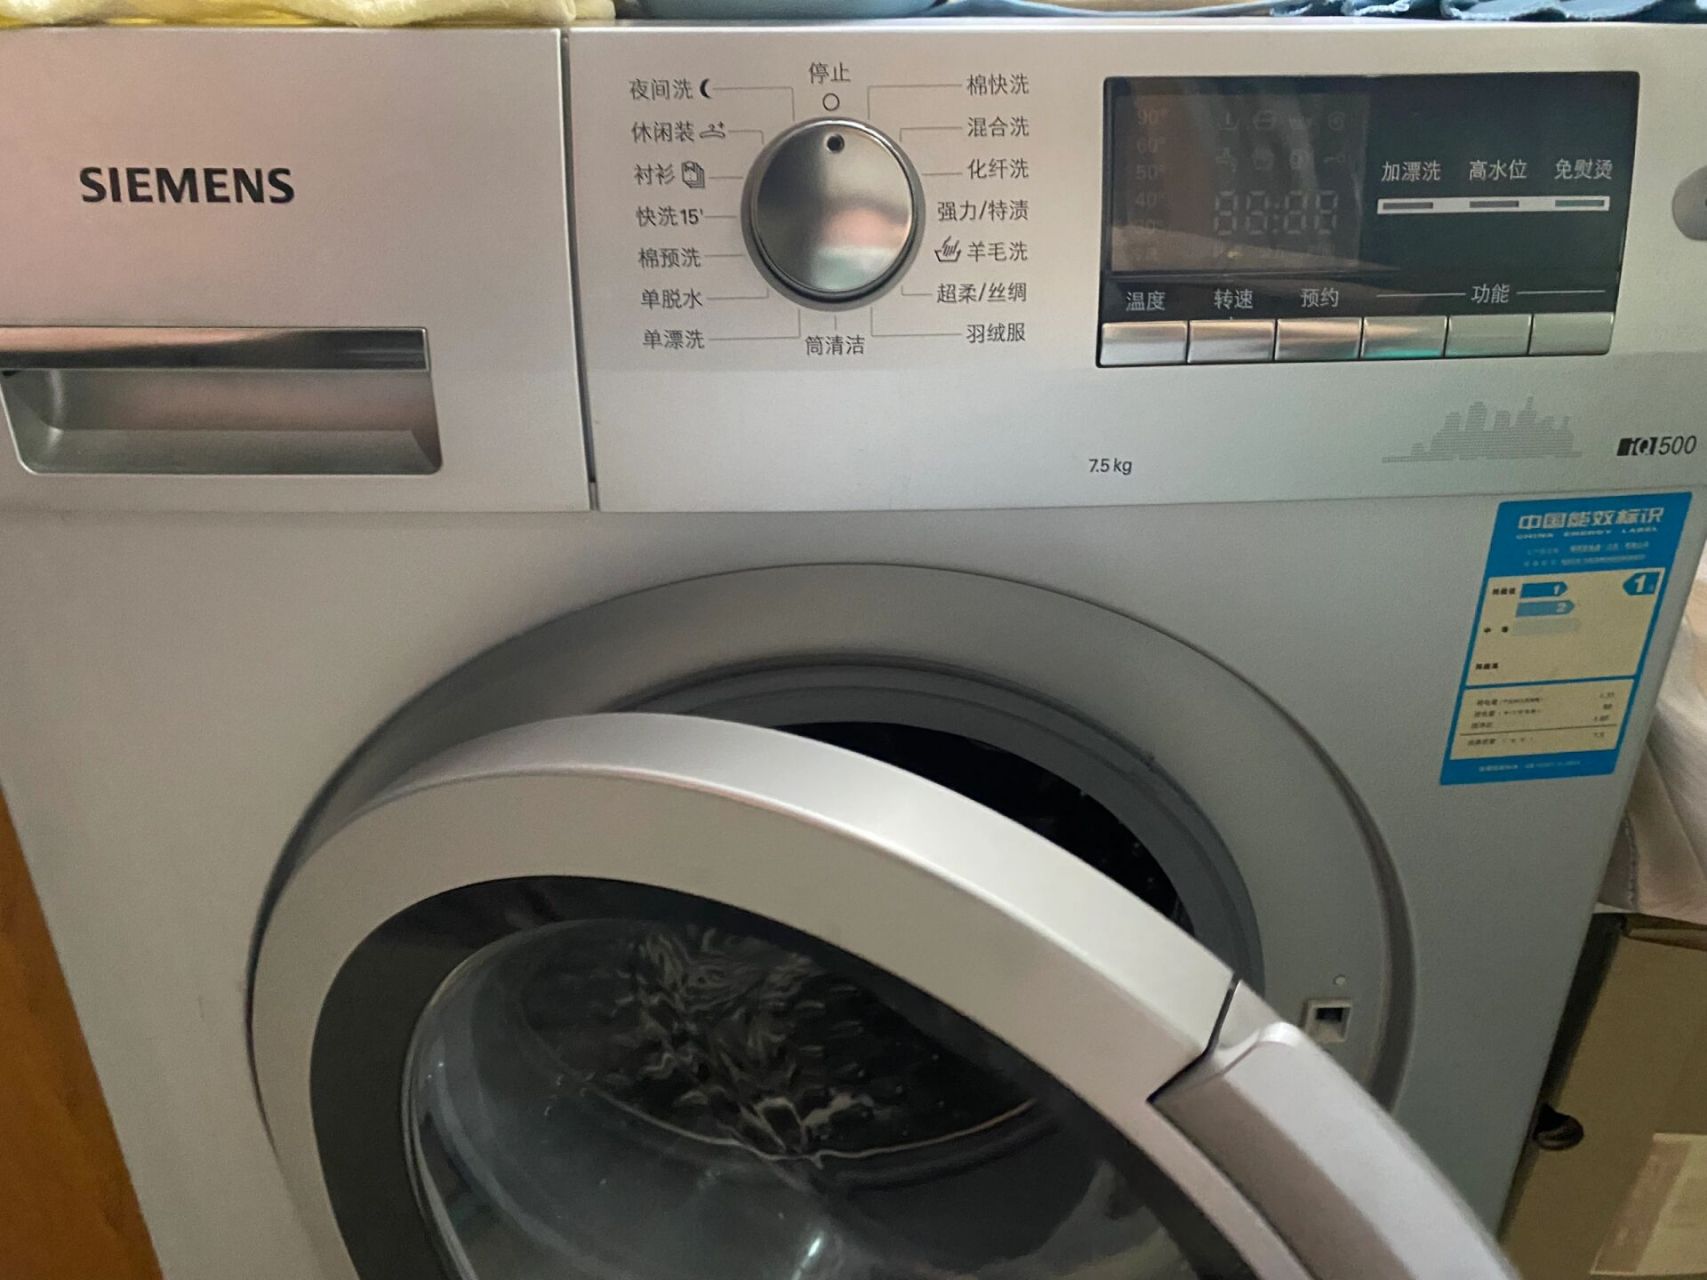 西门子洗衣机 如何解童锁98 今天在洗衣服的时候 不小心锁住了童锁